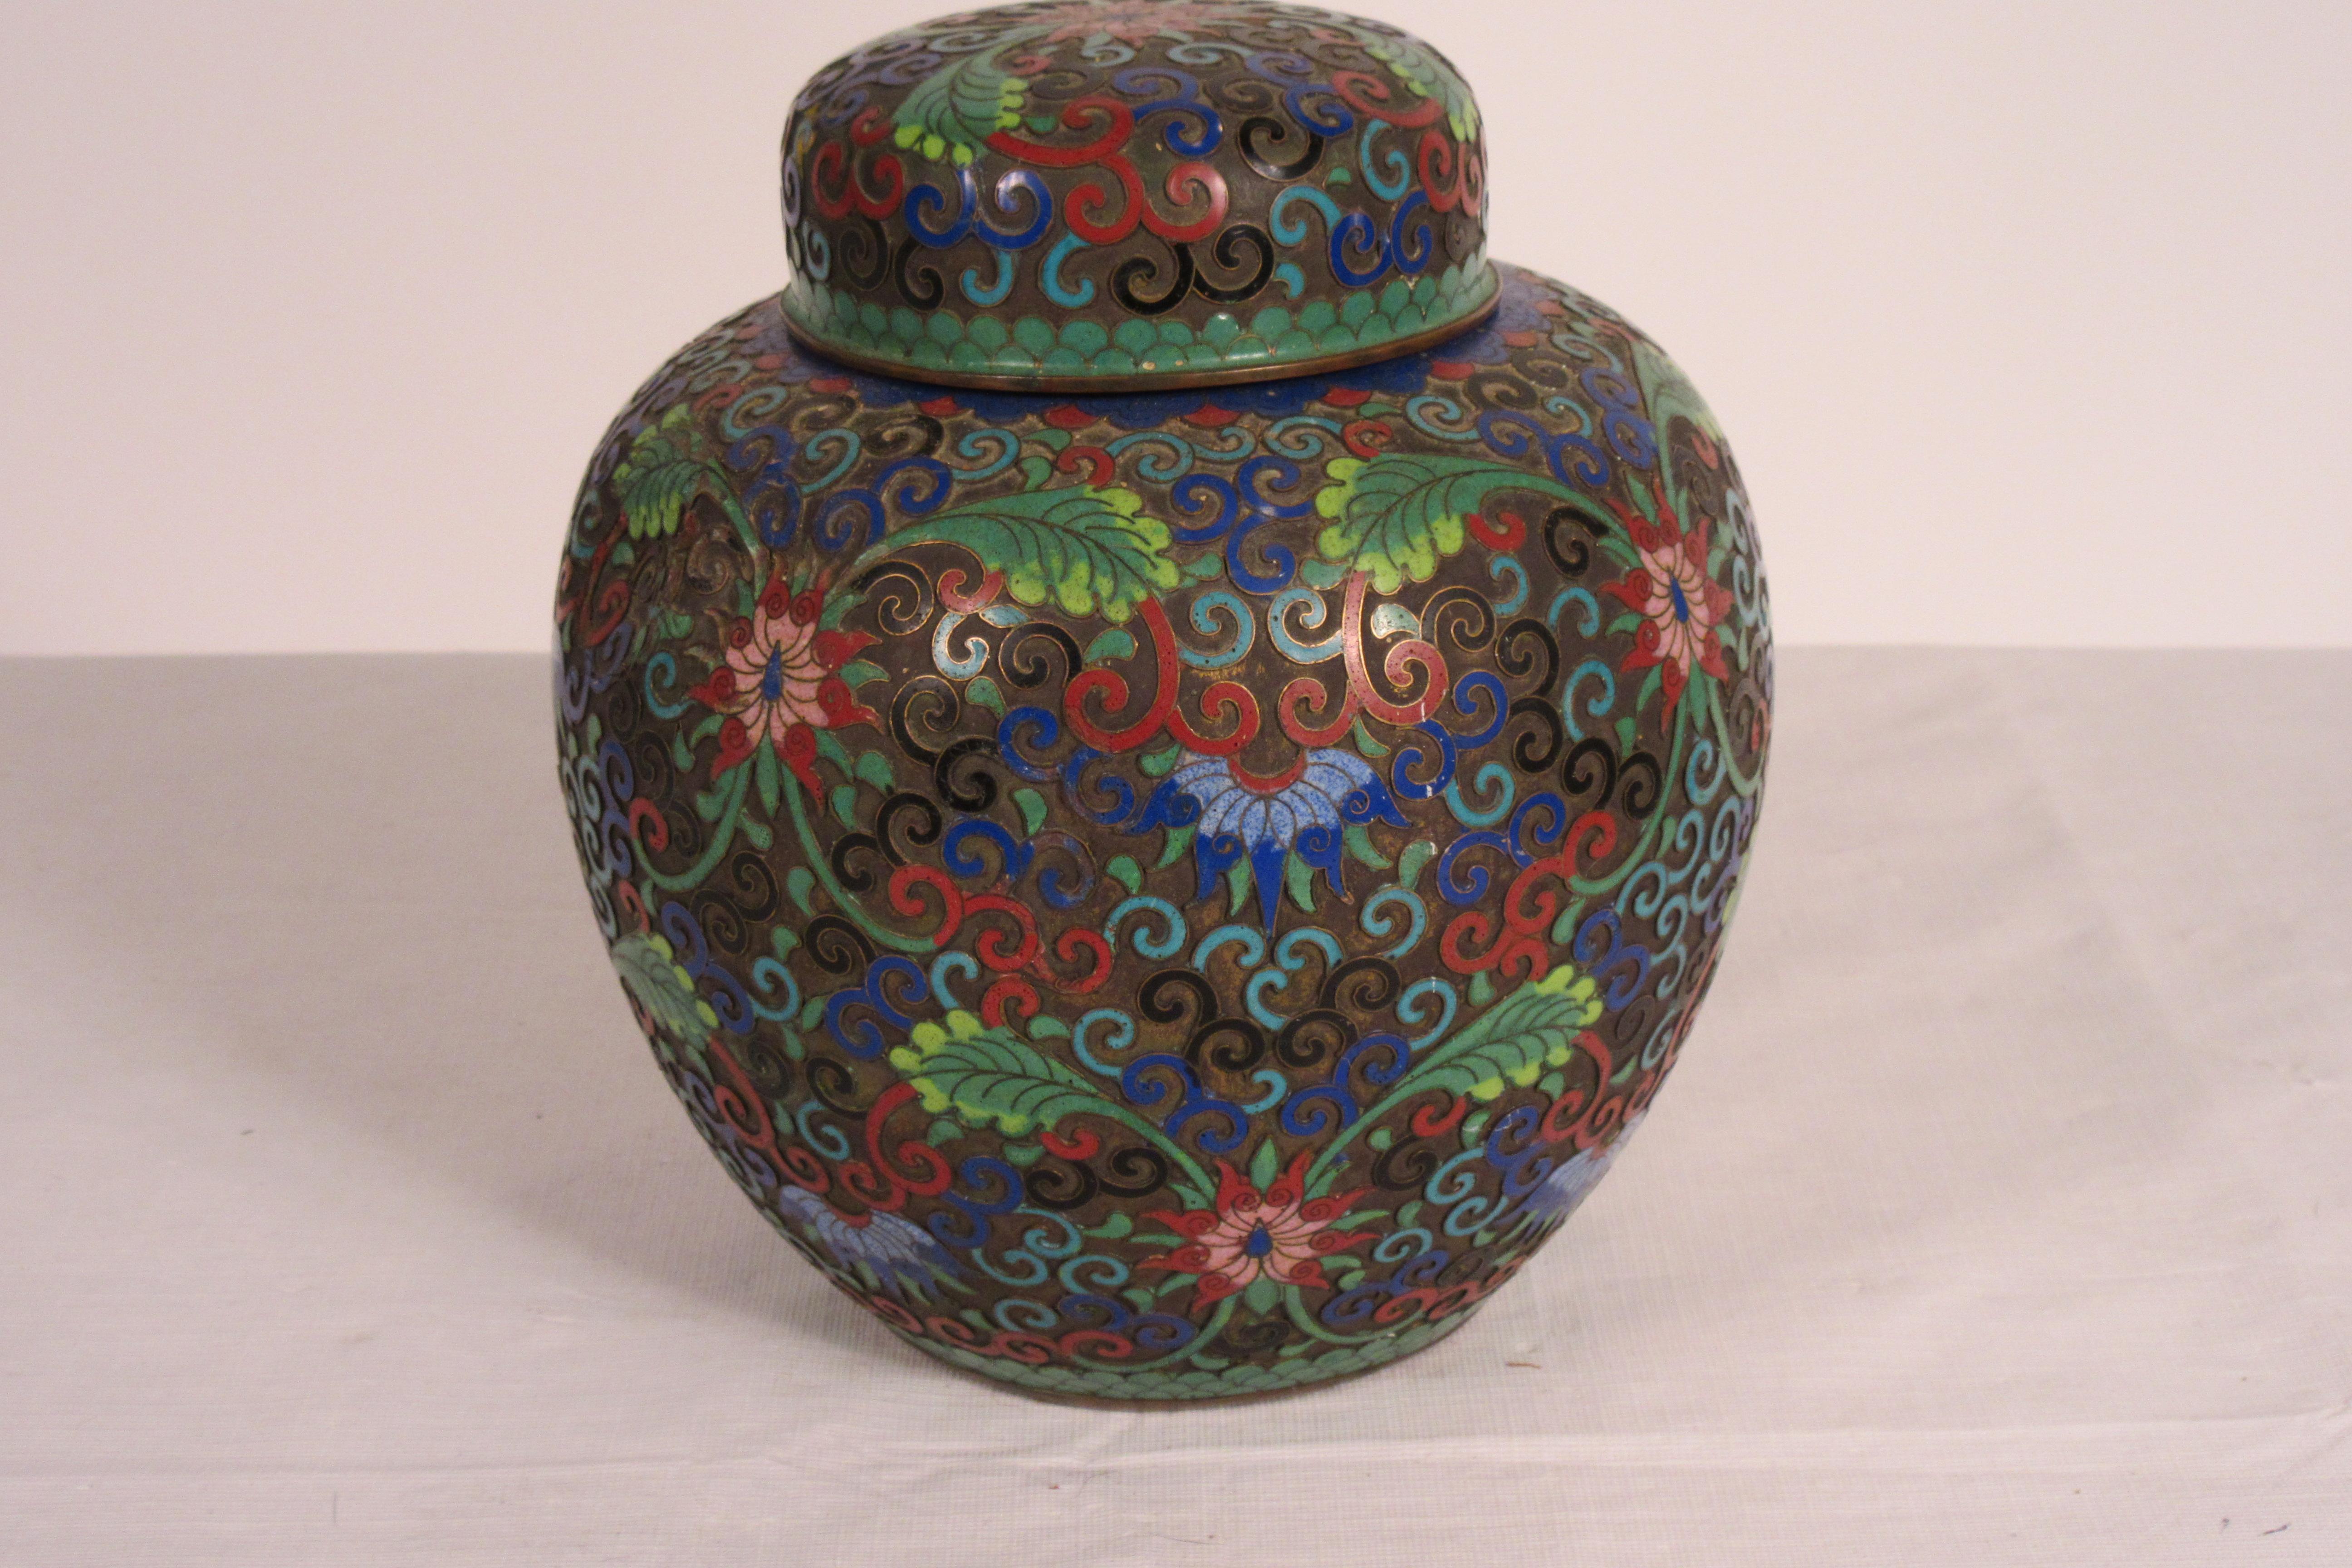 cloisonné-Krug mit Deckel, 1910. Eine Delle im Bereich der Vase.